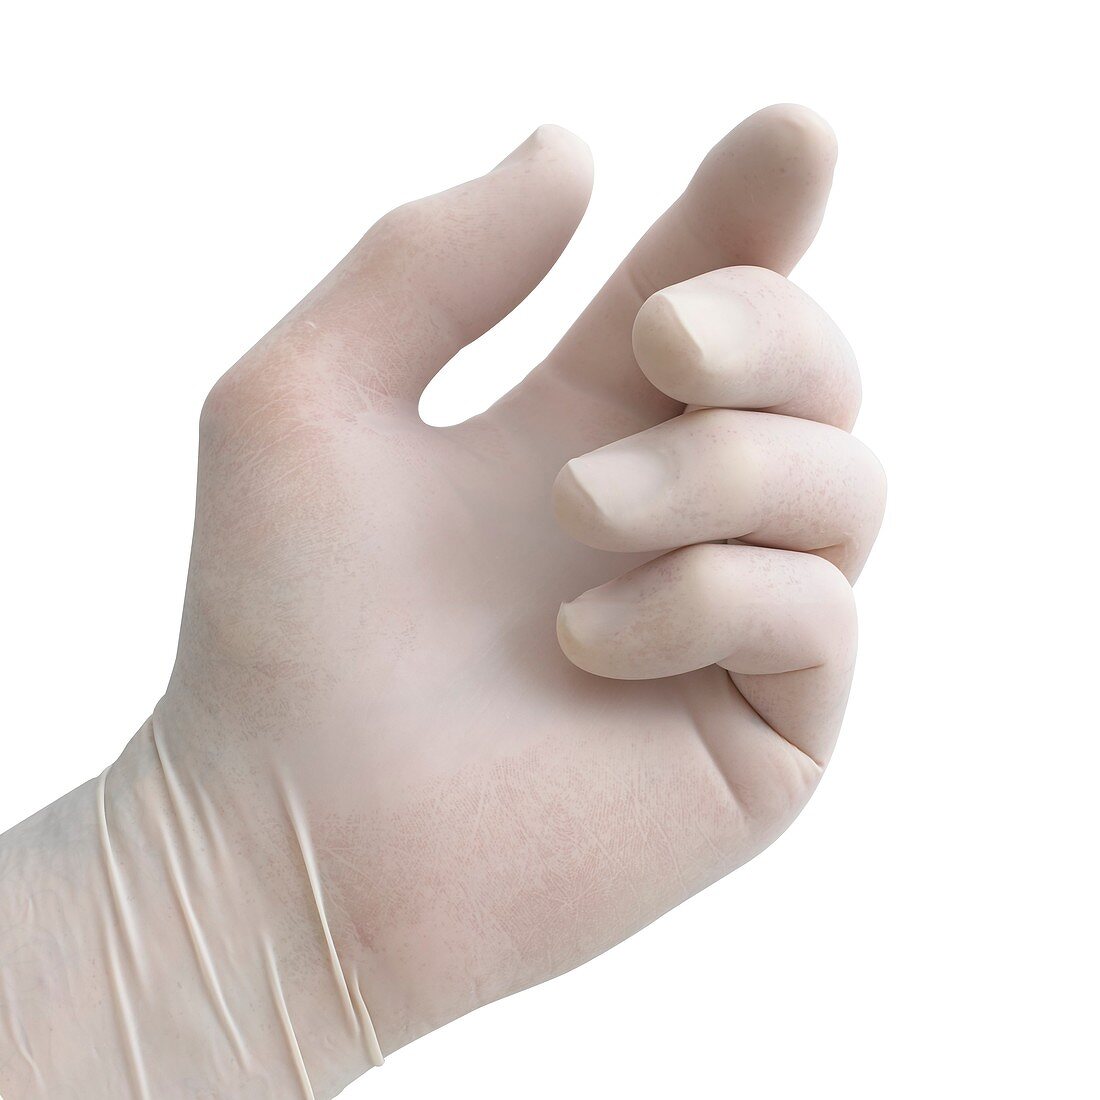 Protective latex glove